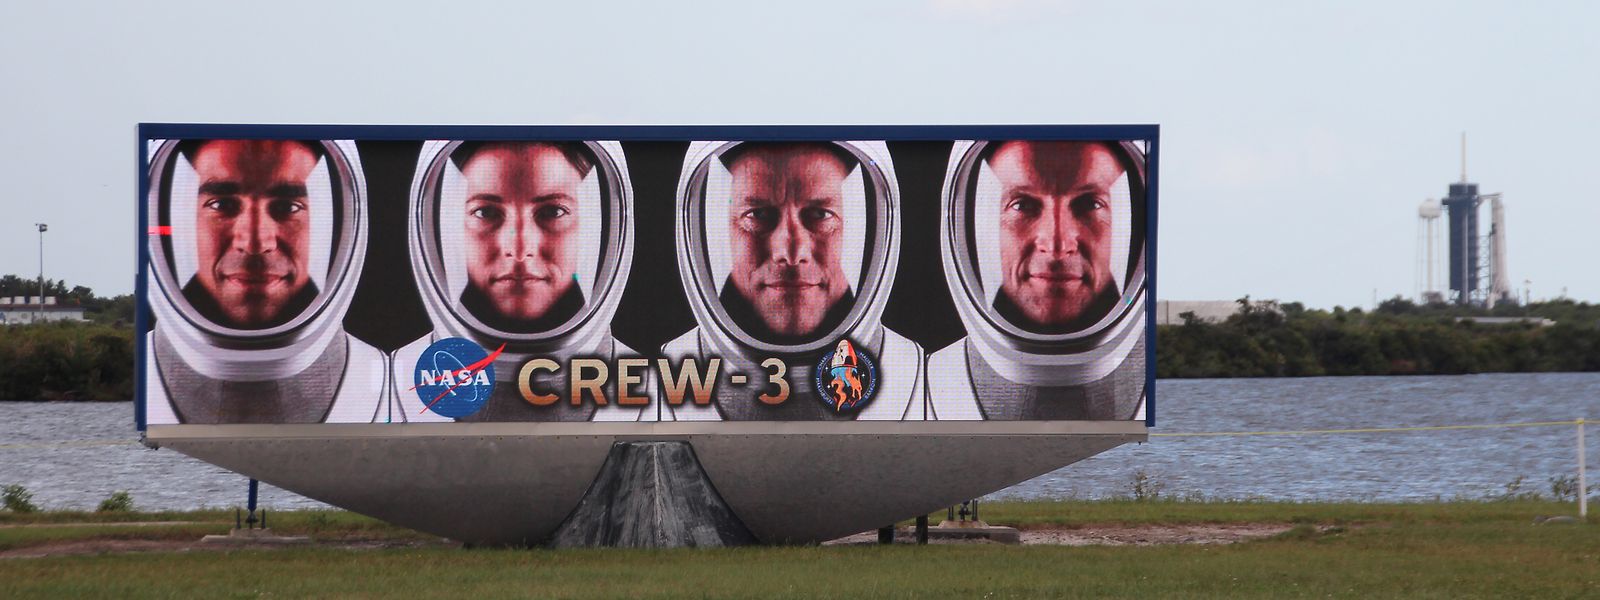 Die "Crew-3" muss noch ein wenig warten.